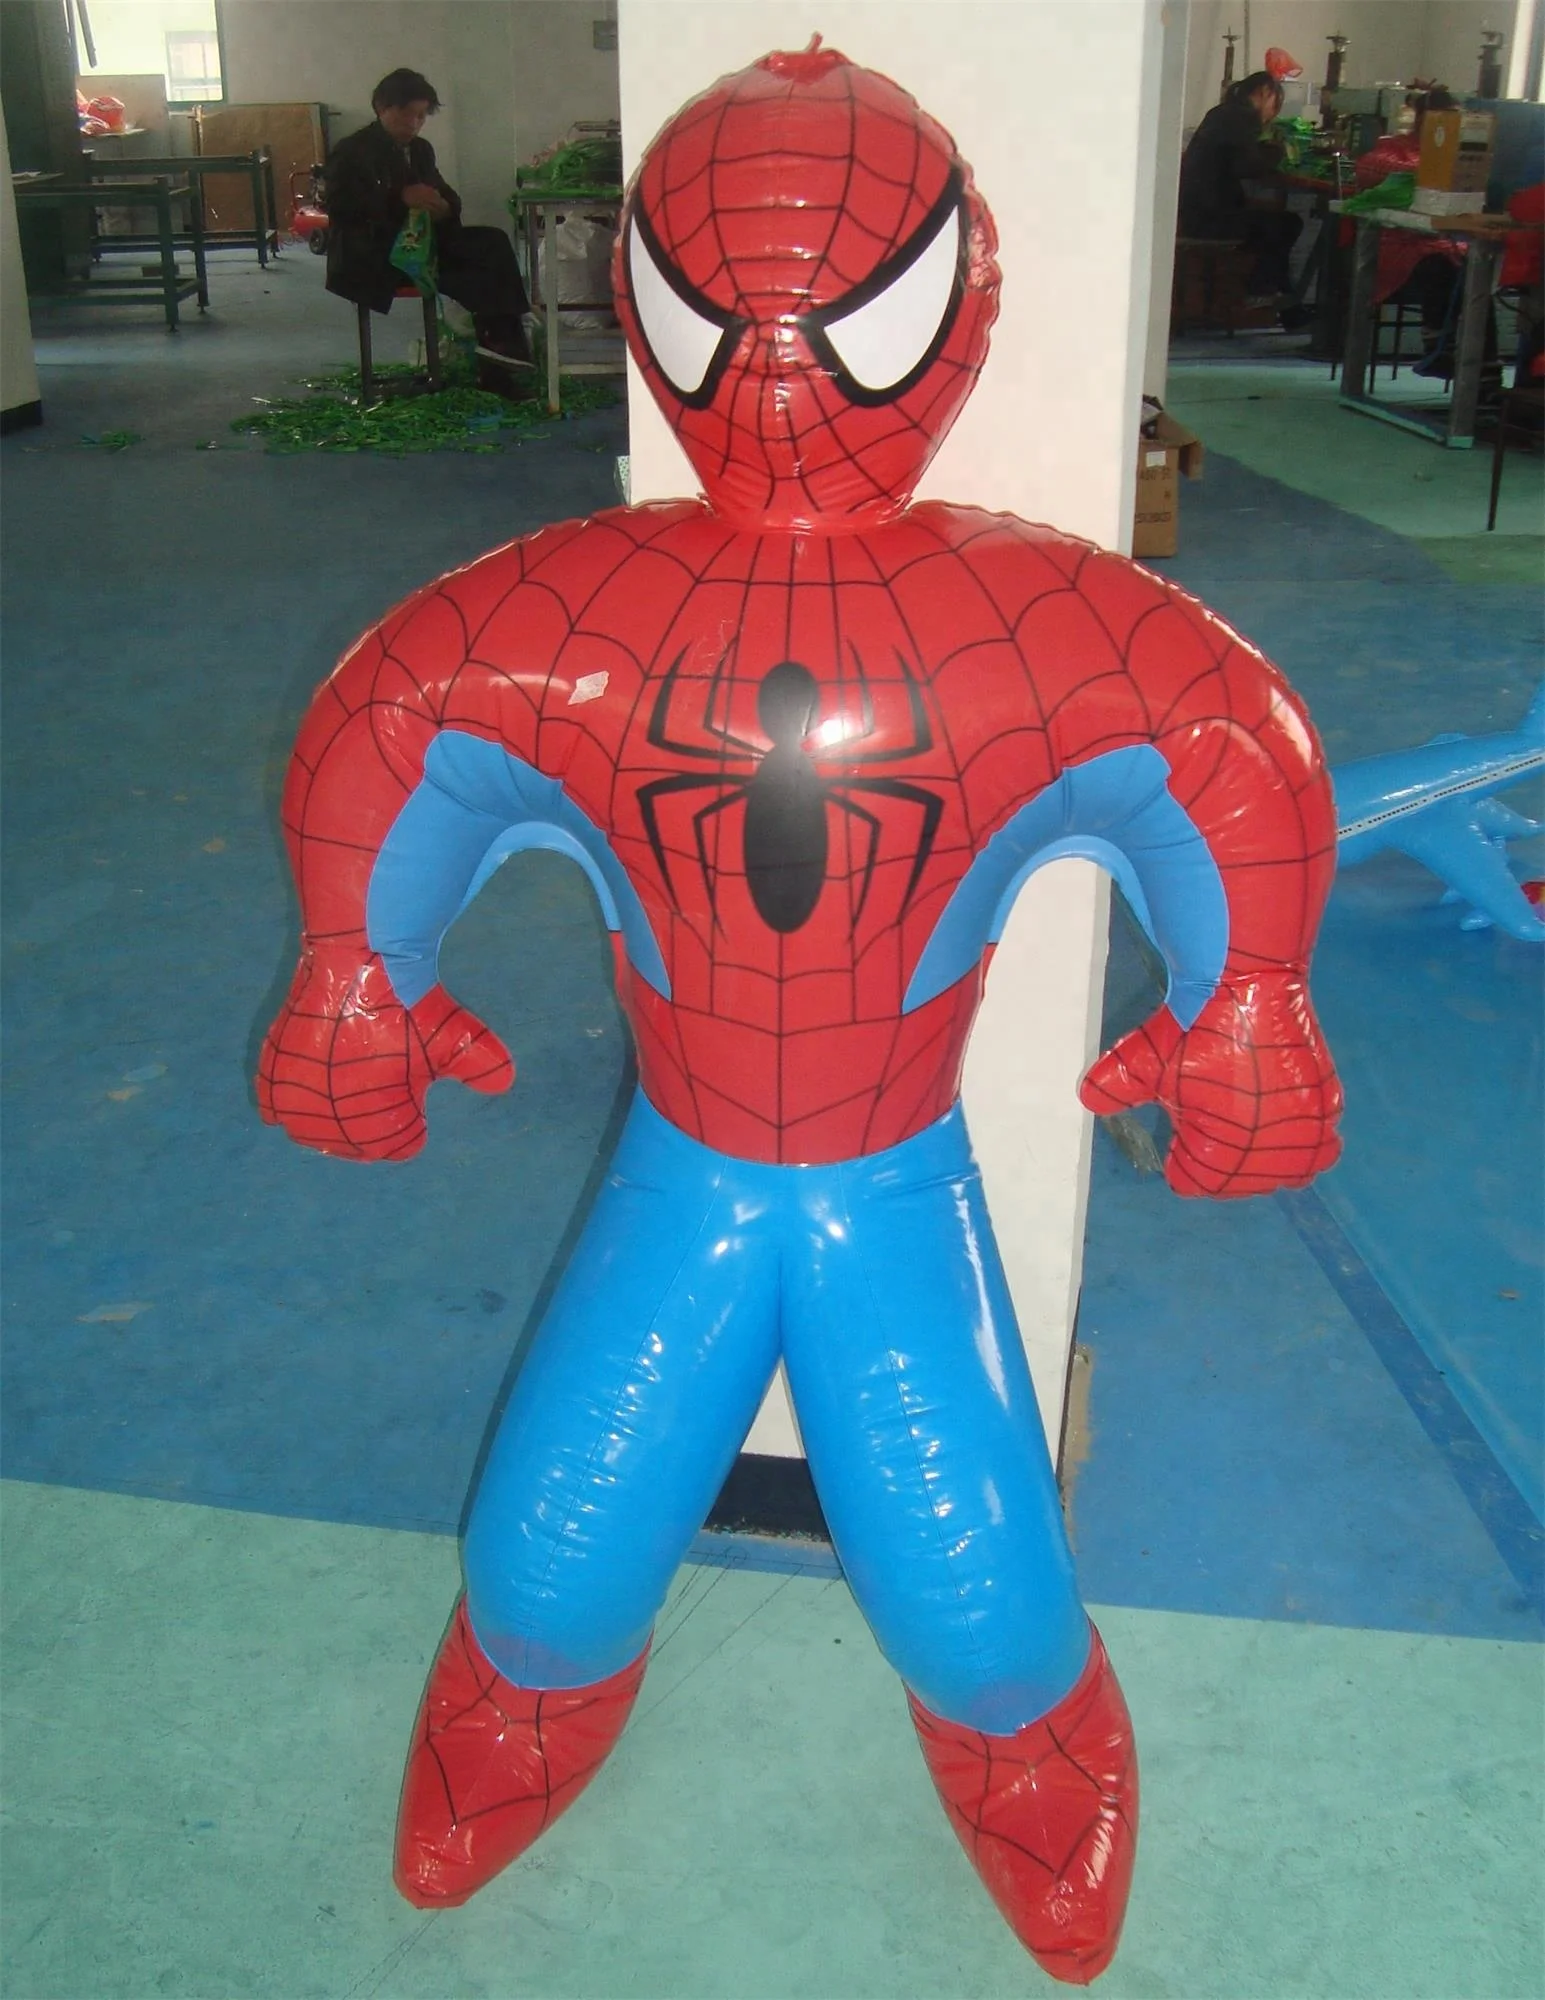 
Экологичные пластиковые игрушки из ПВХ для детей, надувной человек-паук с красными губами 